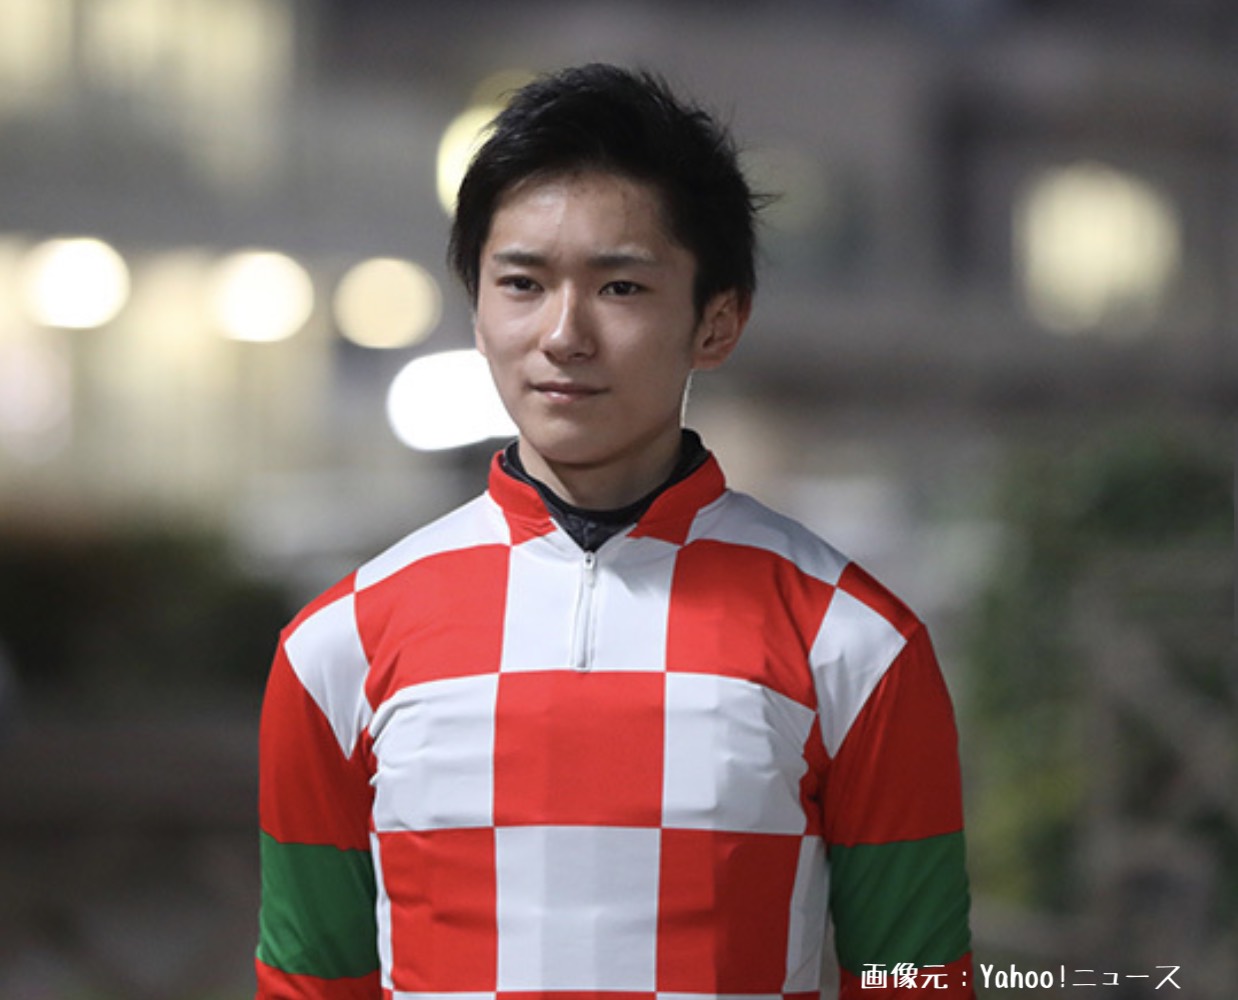 競馬界期待の若手騎手、坂井瑠星騎手の写真画像